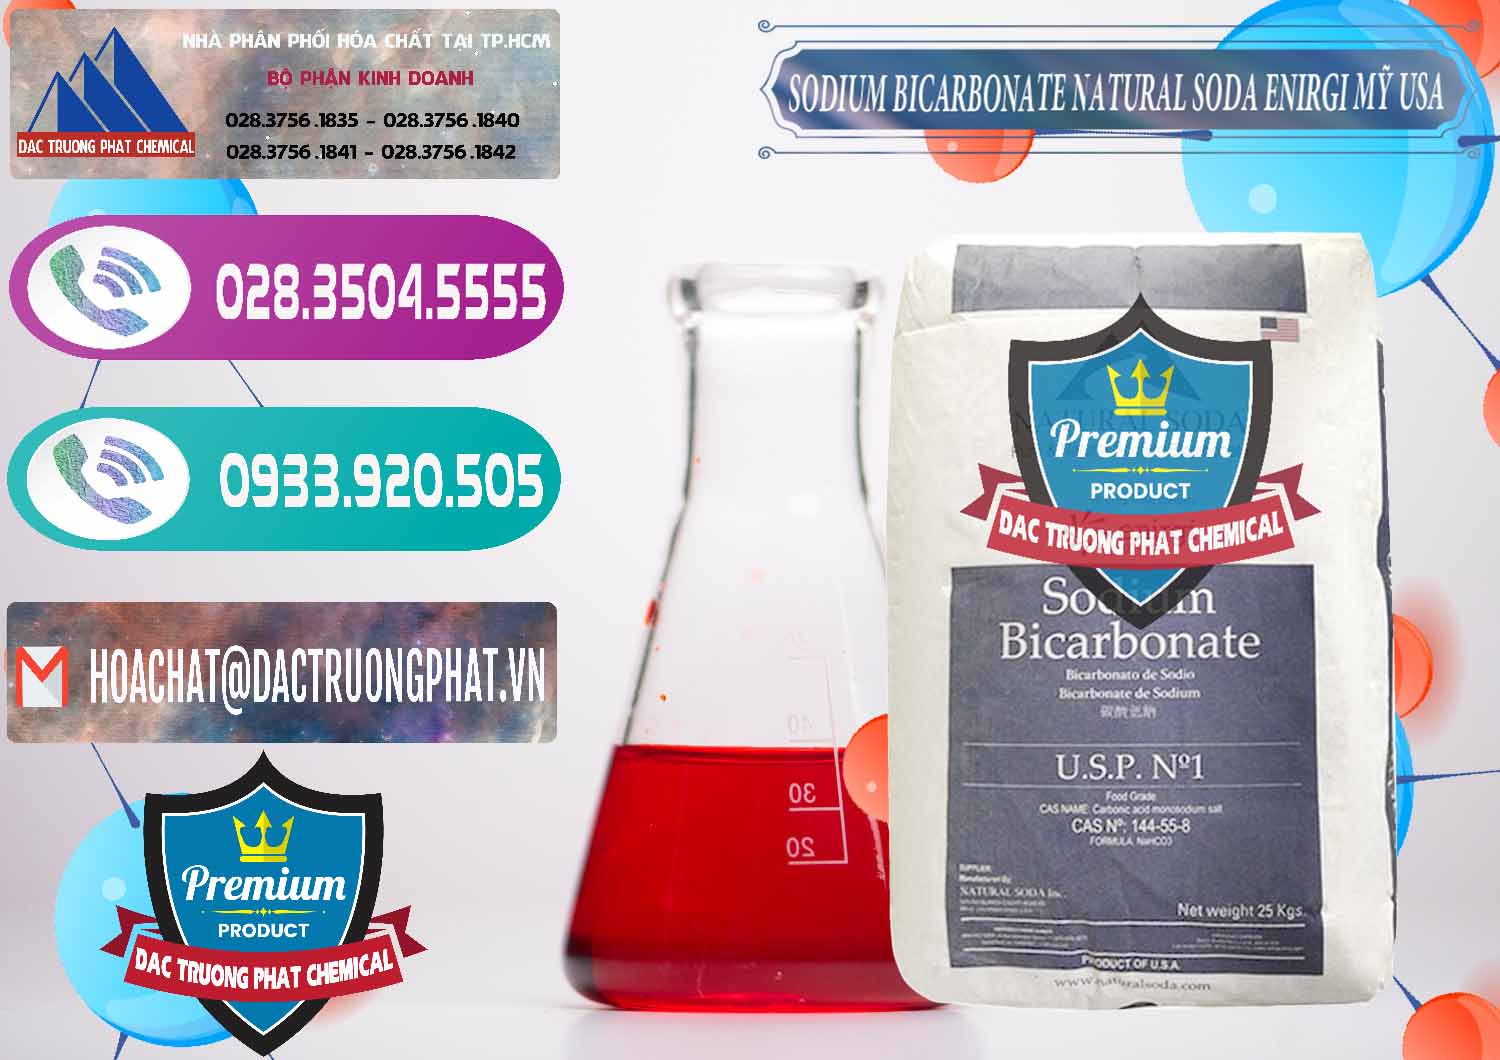 Công ty chuyên bán và cung cấp Sodium Bicarbonate – Bicar NaHCO3 Food Grade Natural Soda Enirgi Mỹ USA - 0257 - Nơi nhập khẩu ( cung cấp ) hóa chất tại TP.HCM - hoachatxulynuoc.com